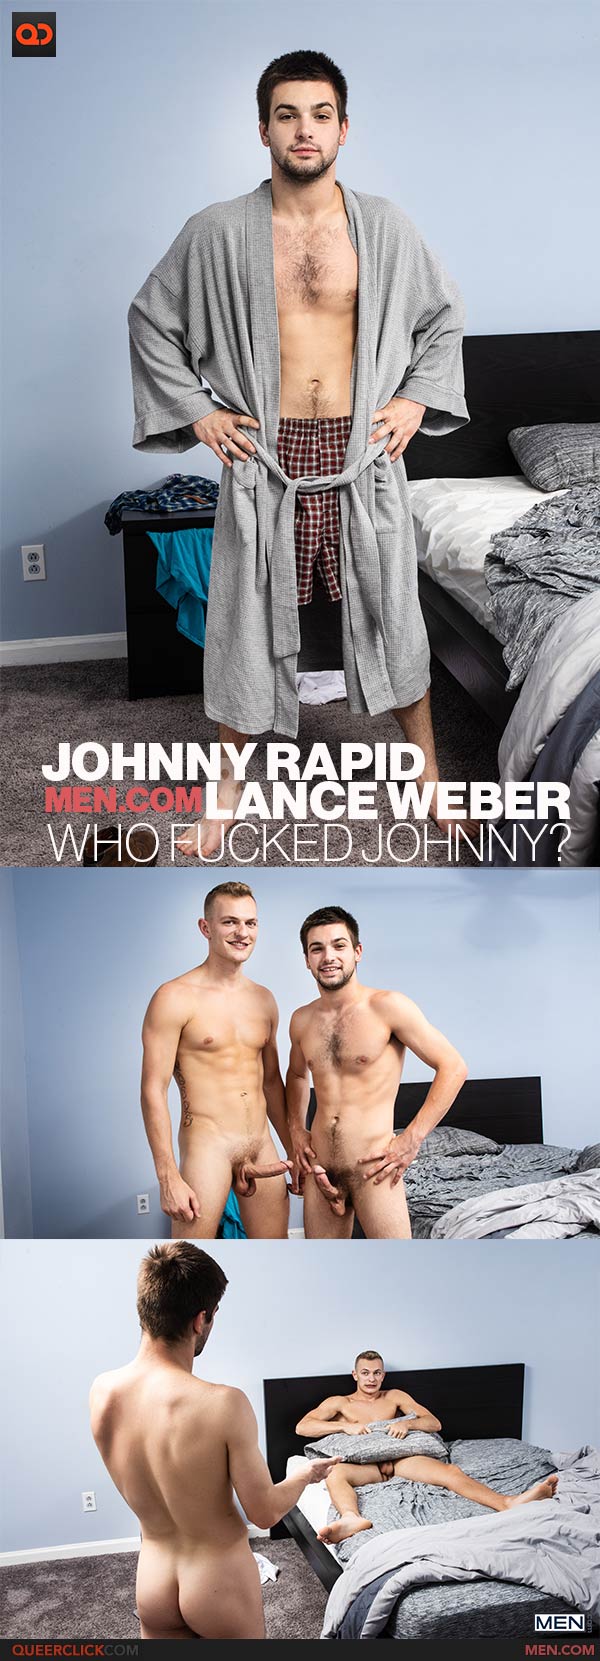 Men.com: Johnny Rapid and Lance Weber